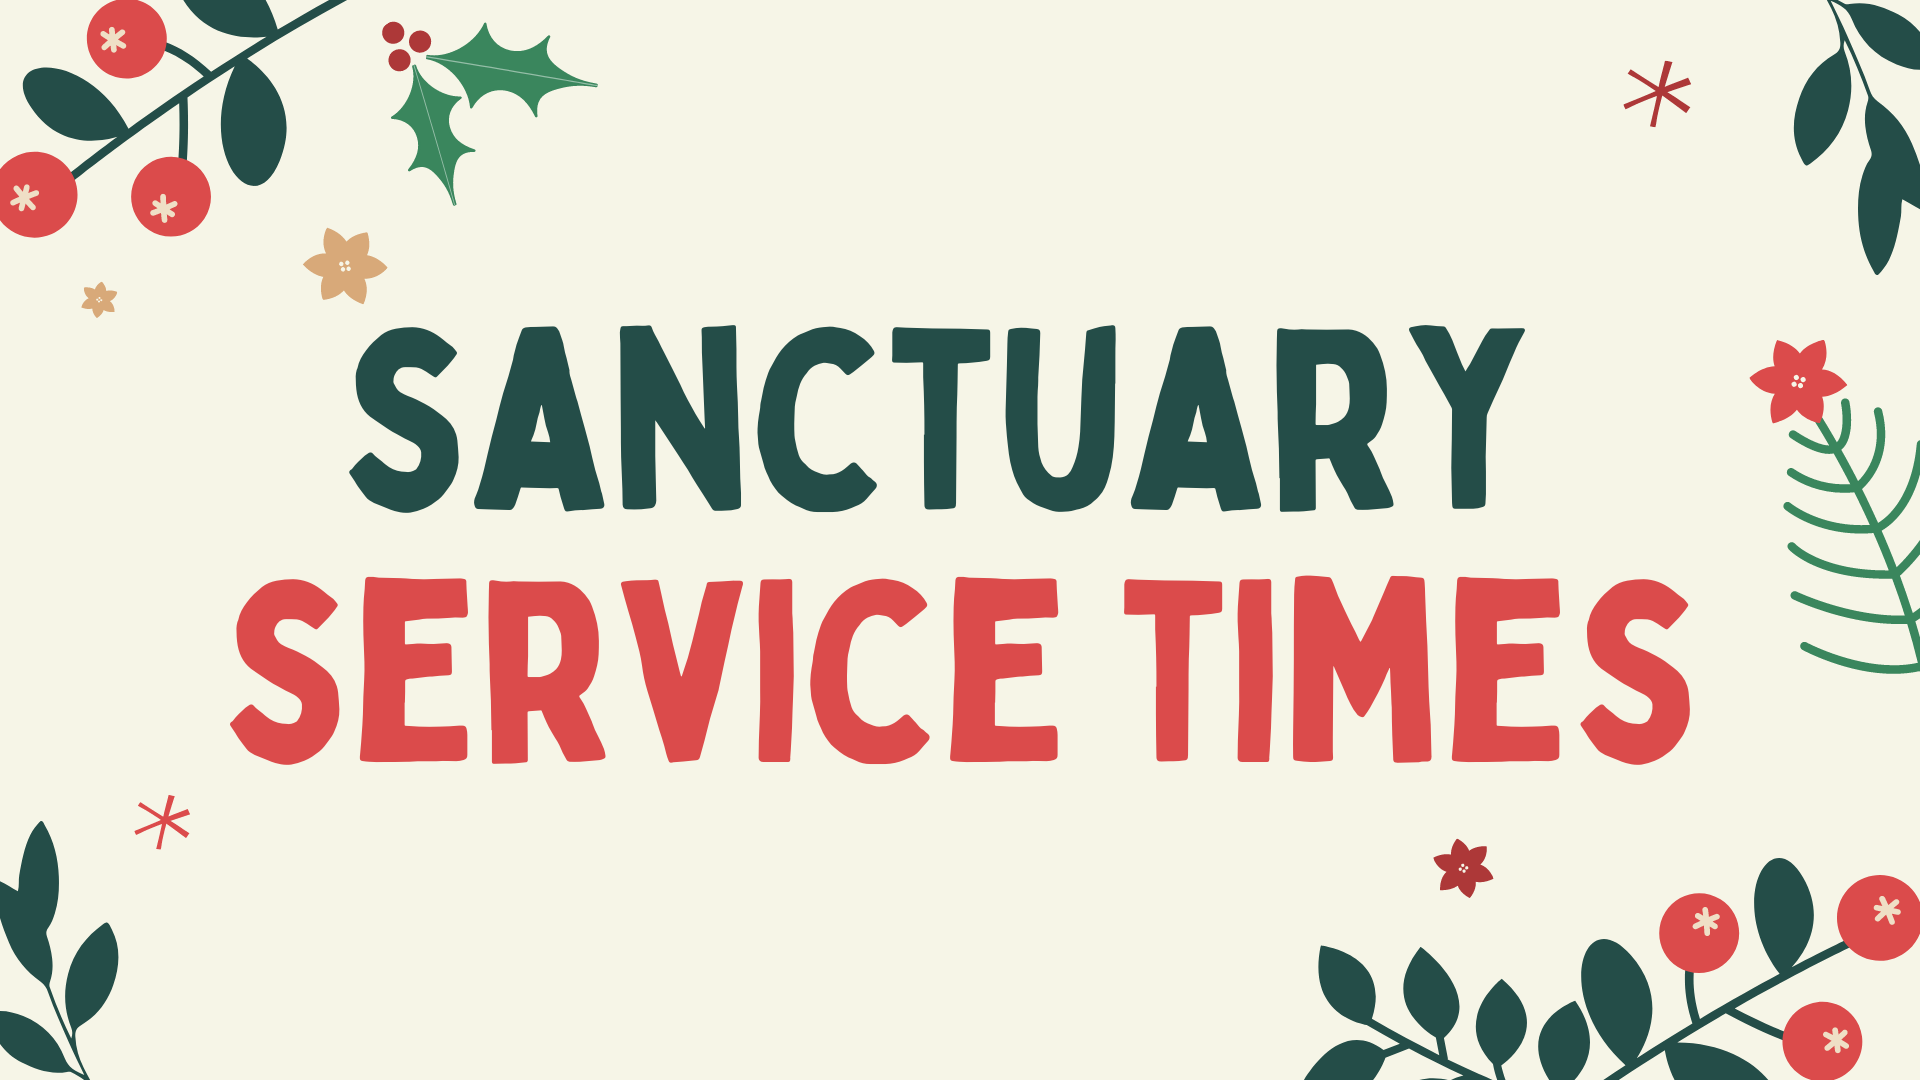 Sanctuary Service Times